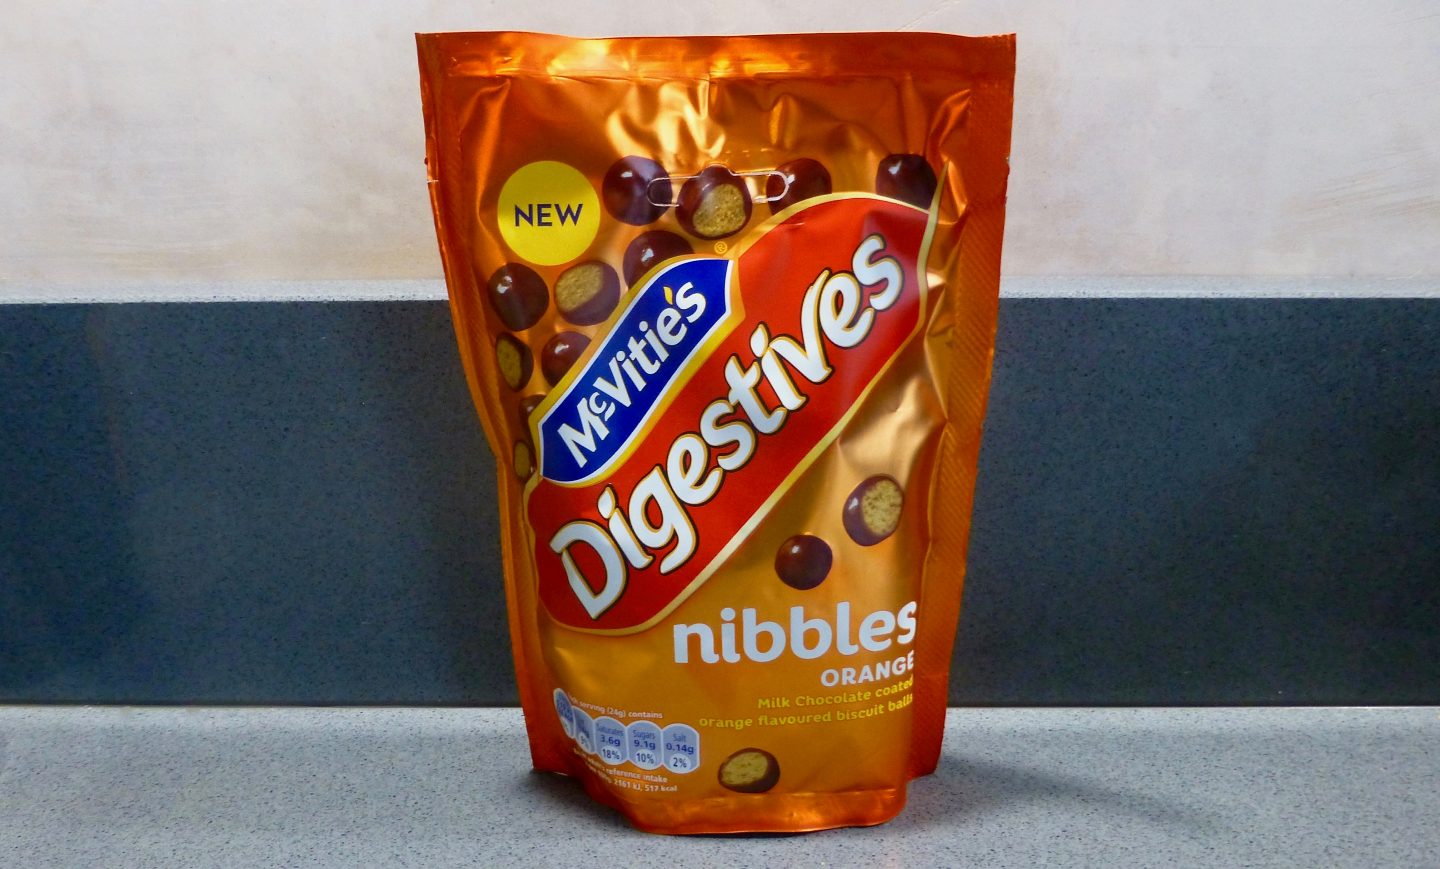 McVitie's Chocolate Orange Nibbles